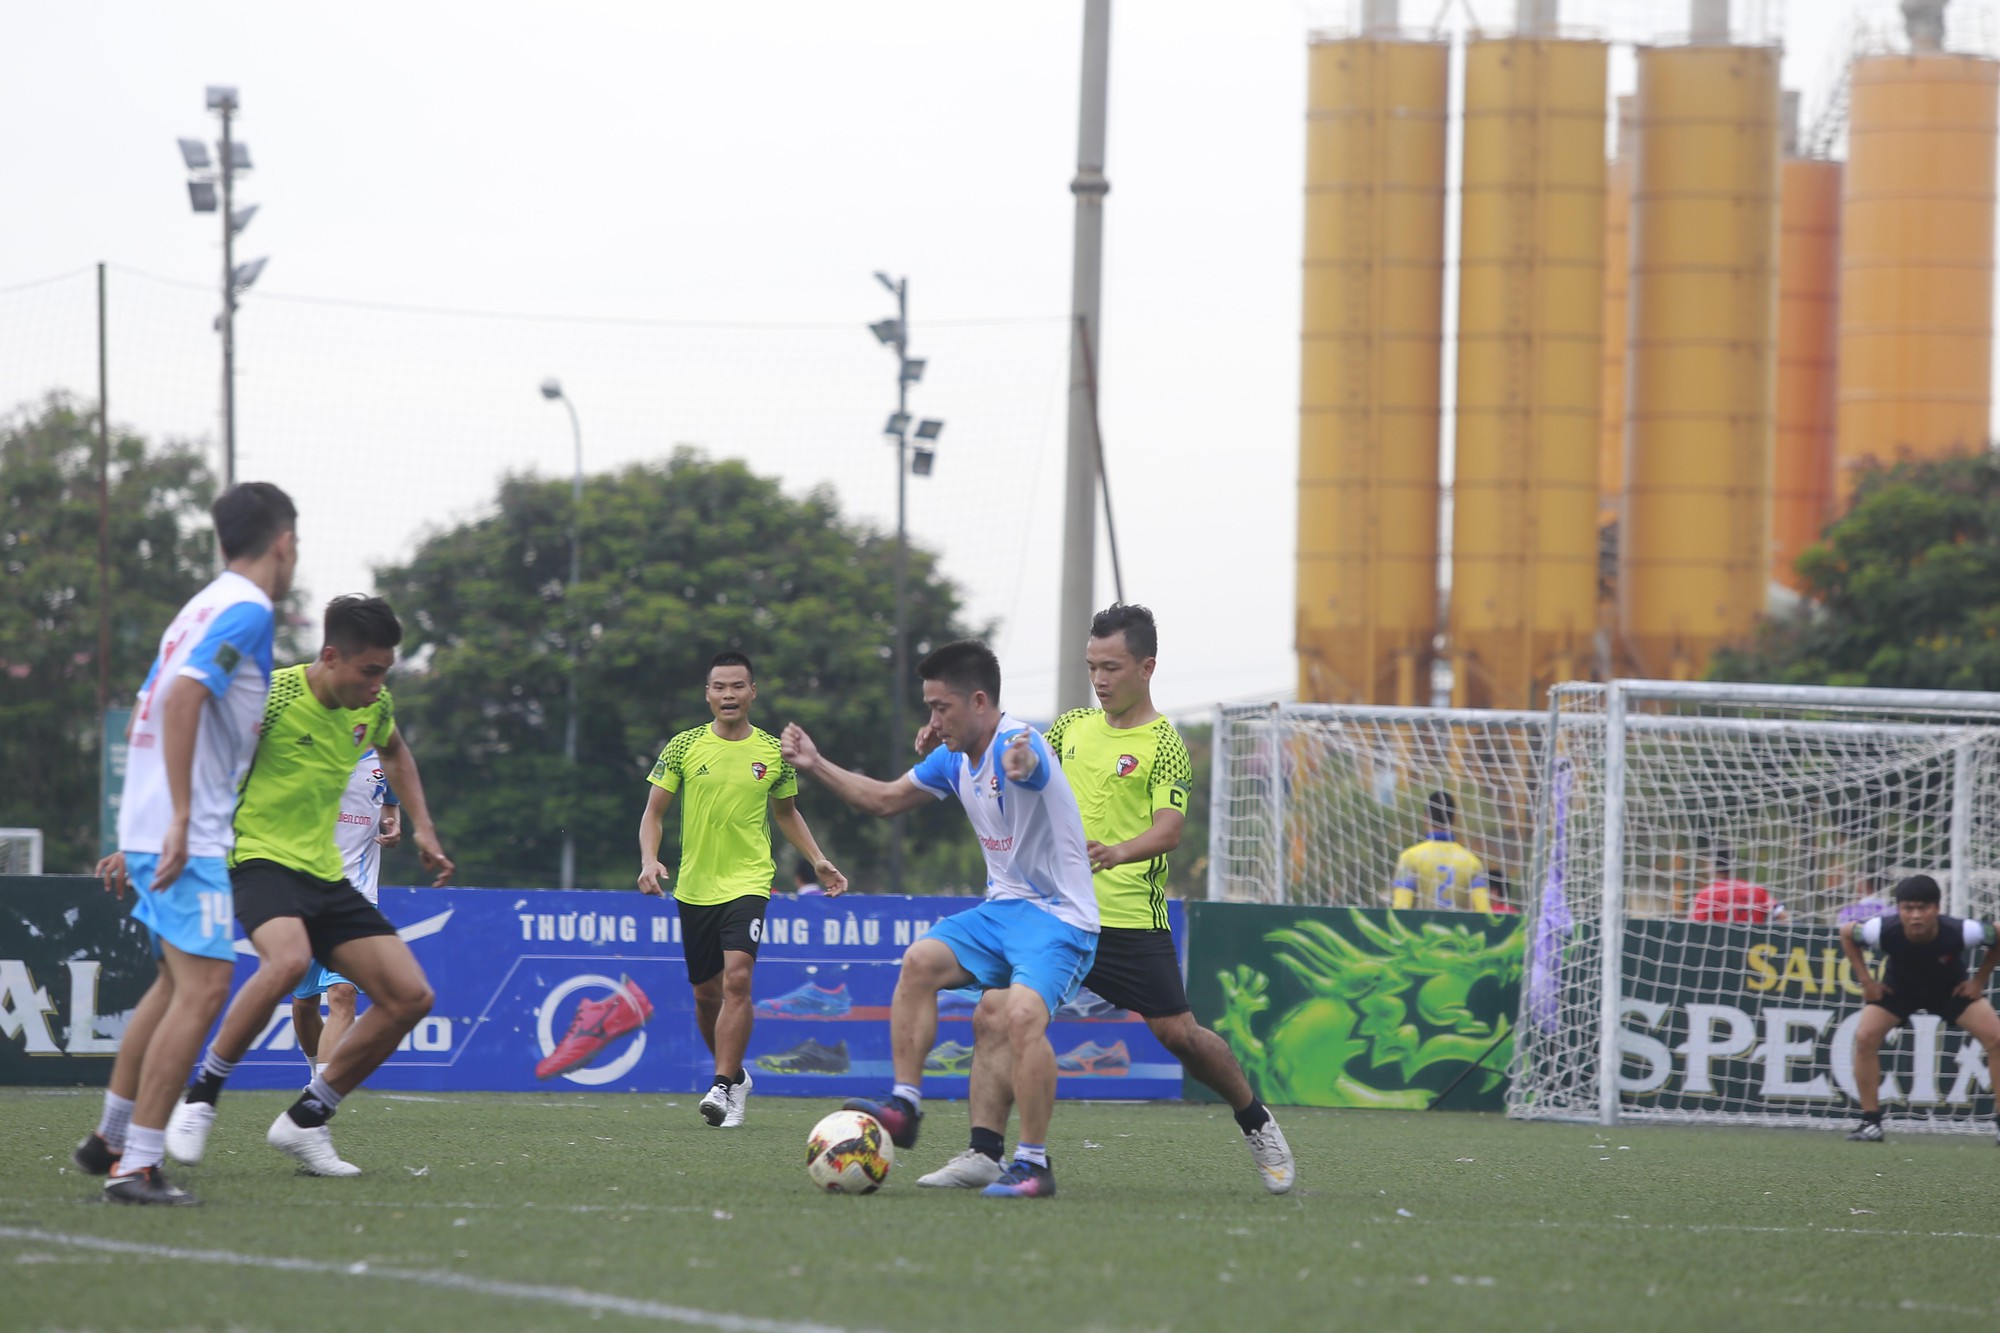 Phương Anh và Hữu Bằng tiếp tục phải cạnh tranh với các đội bóng khác ở cuộc đua trụ hạng. Ảnh Xuân Thu